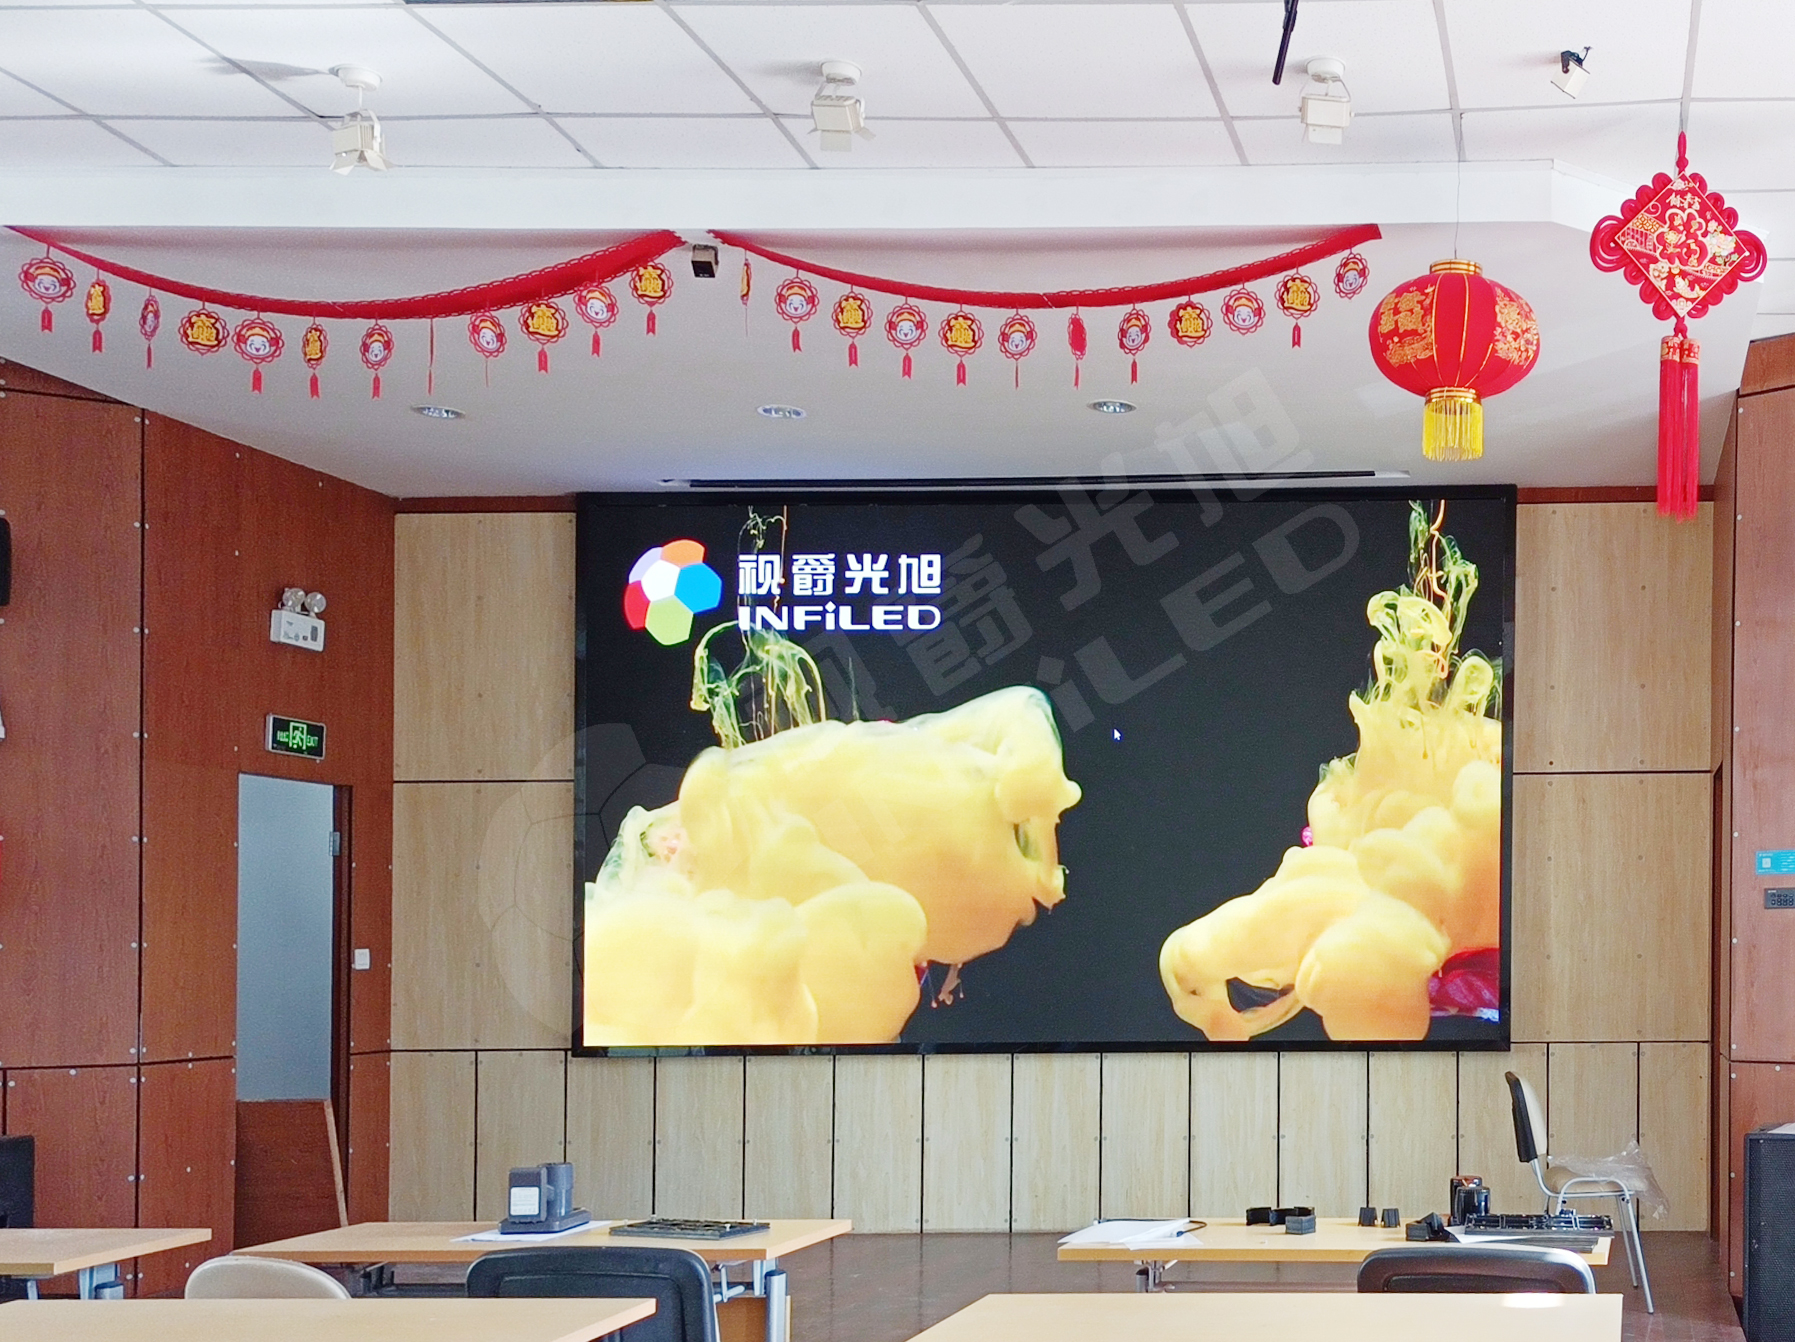 视爵光旭LED显示大屏走进上海市民办金盟学校多媒体教室